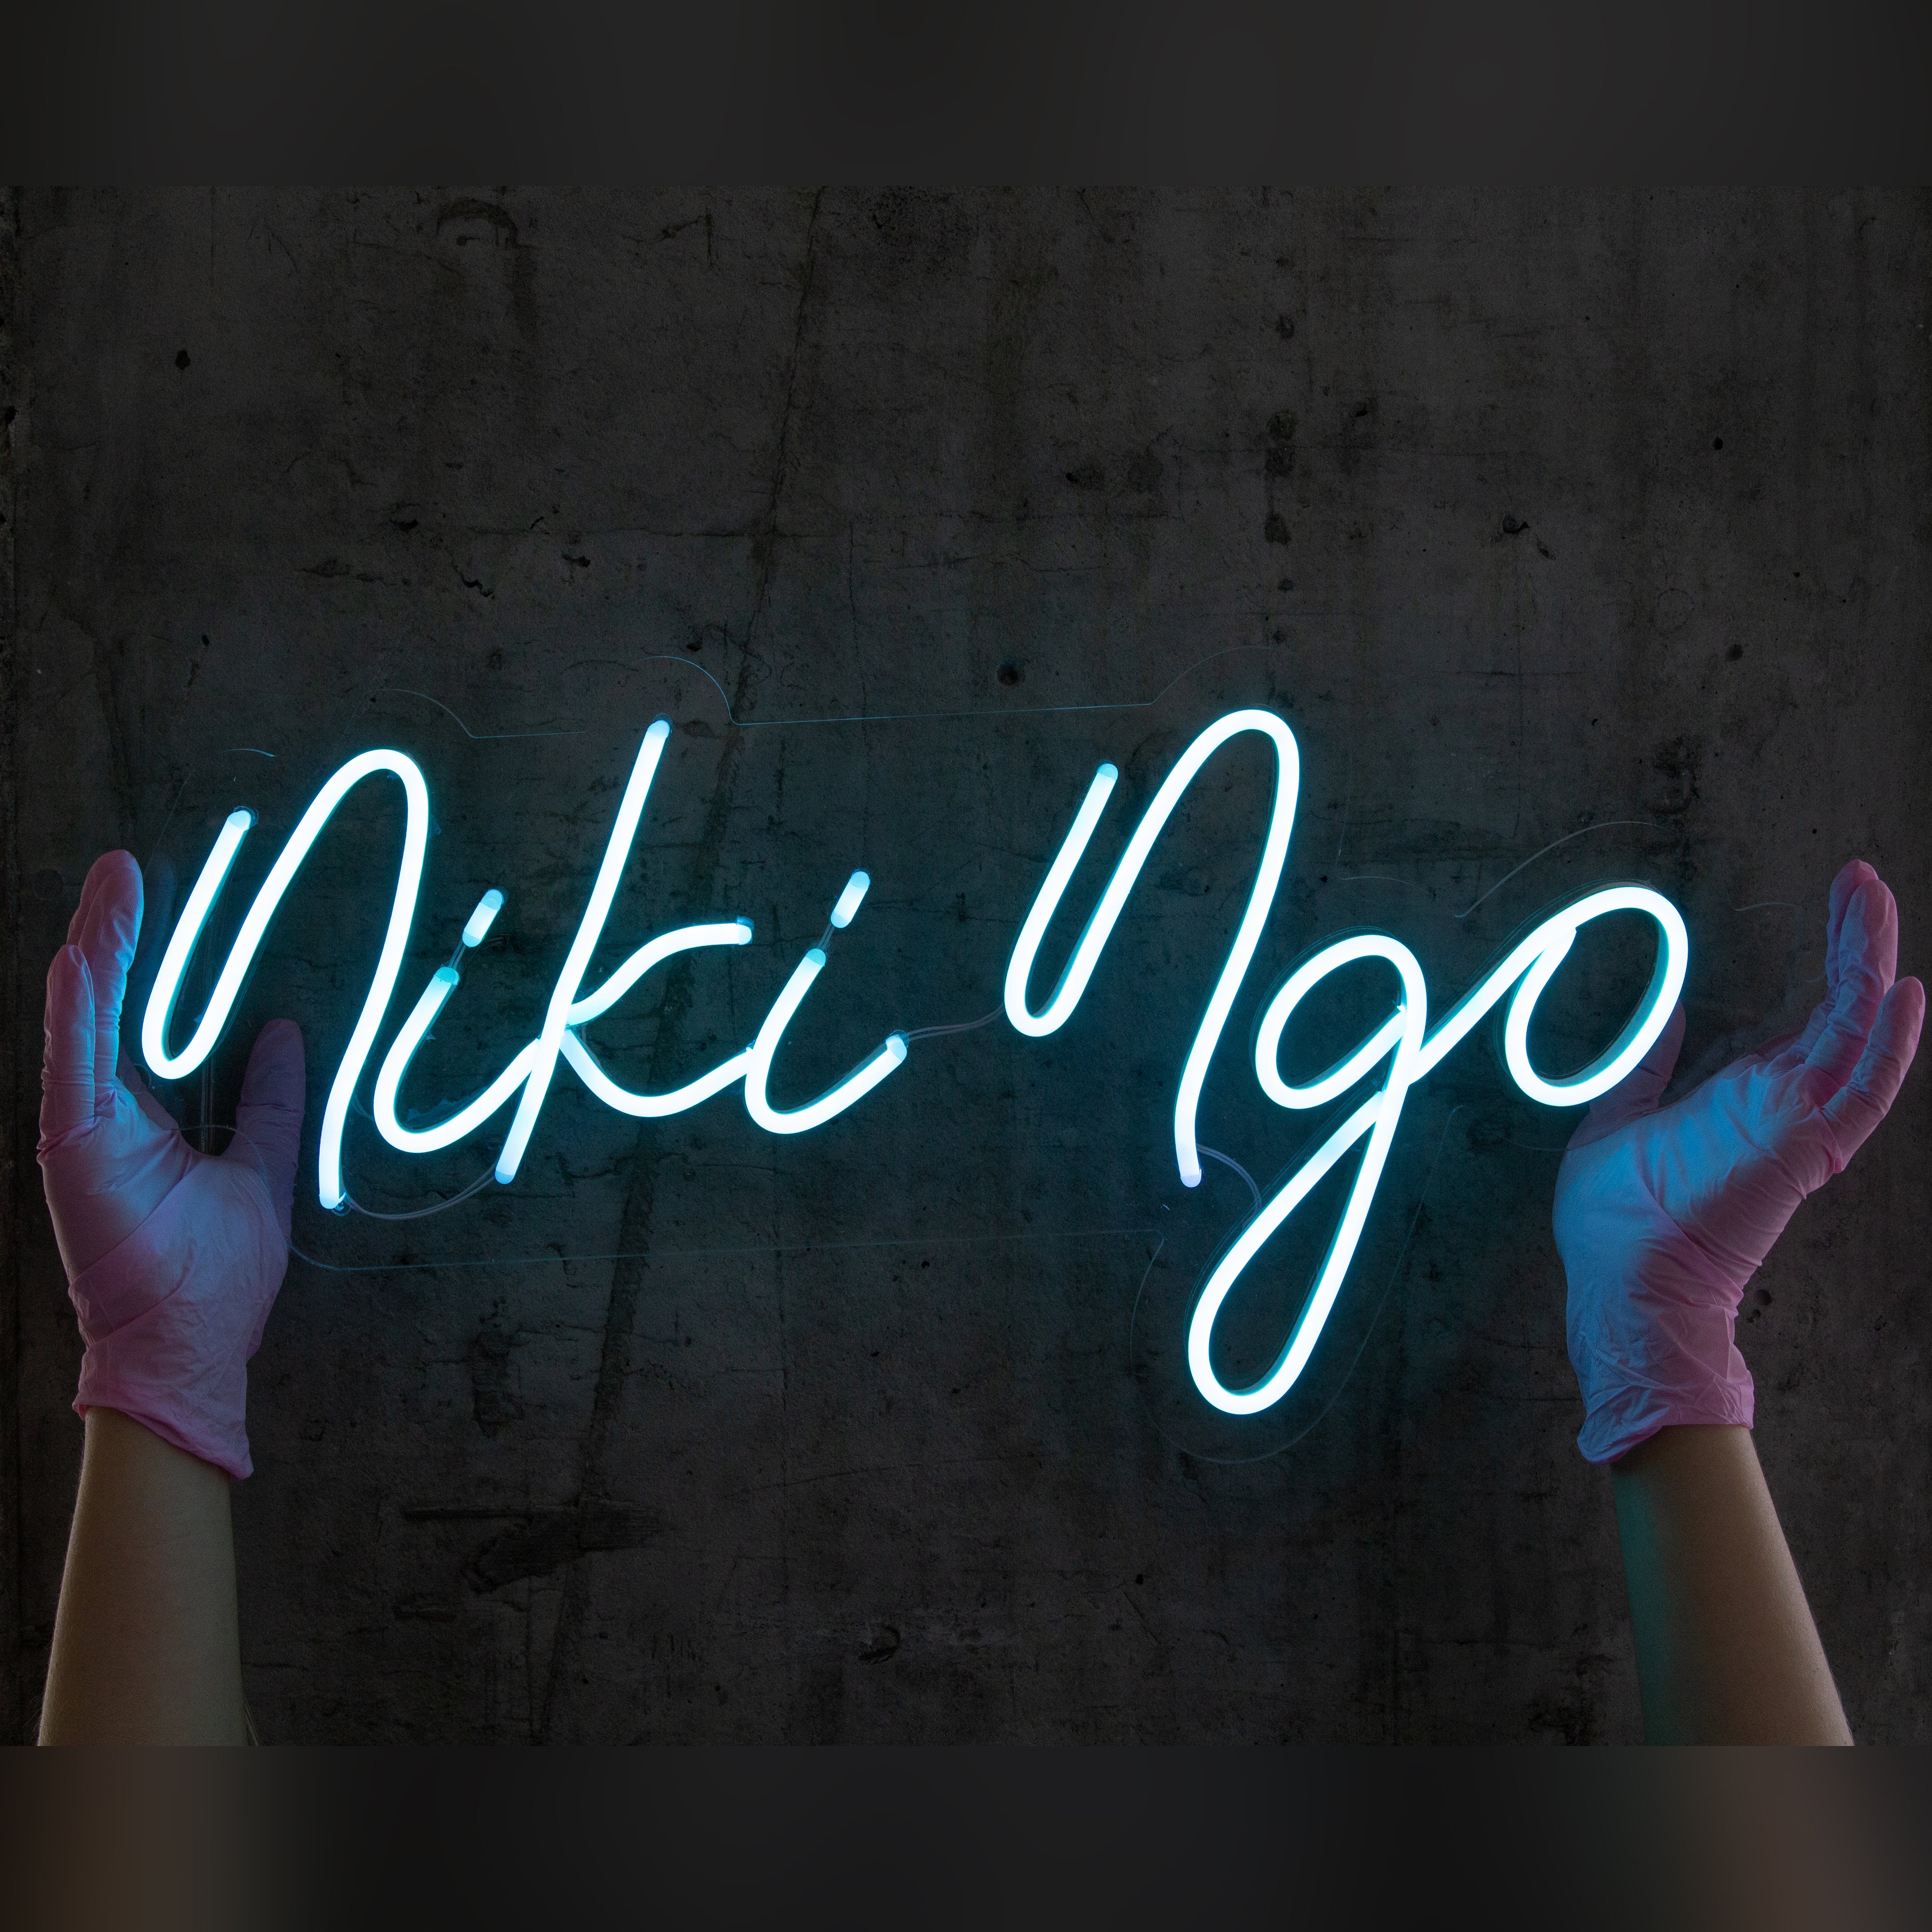 Neon Sign "Niki ngo"